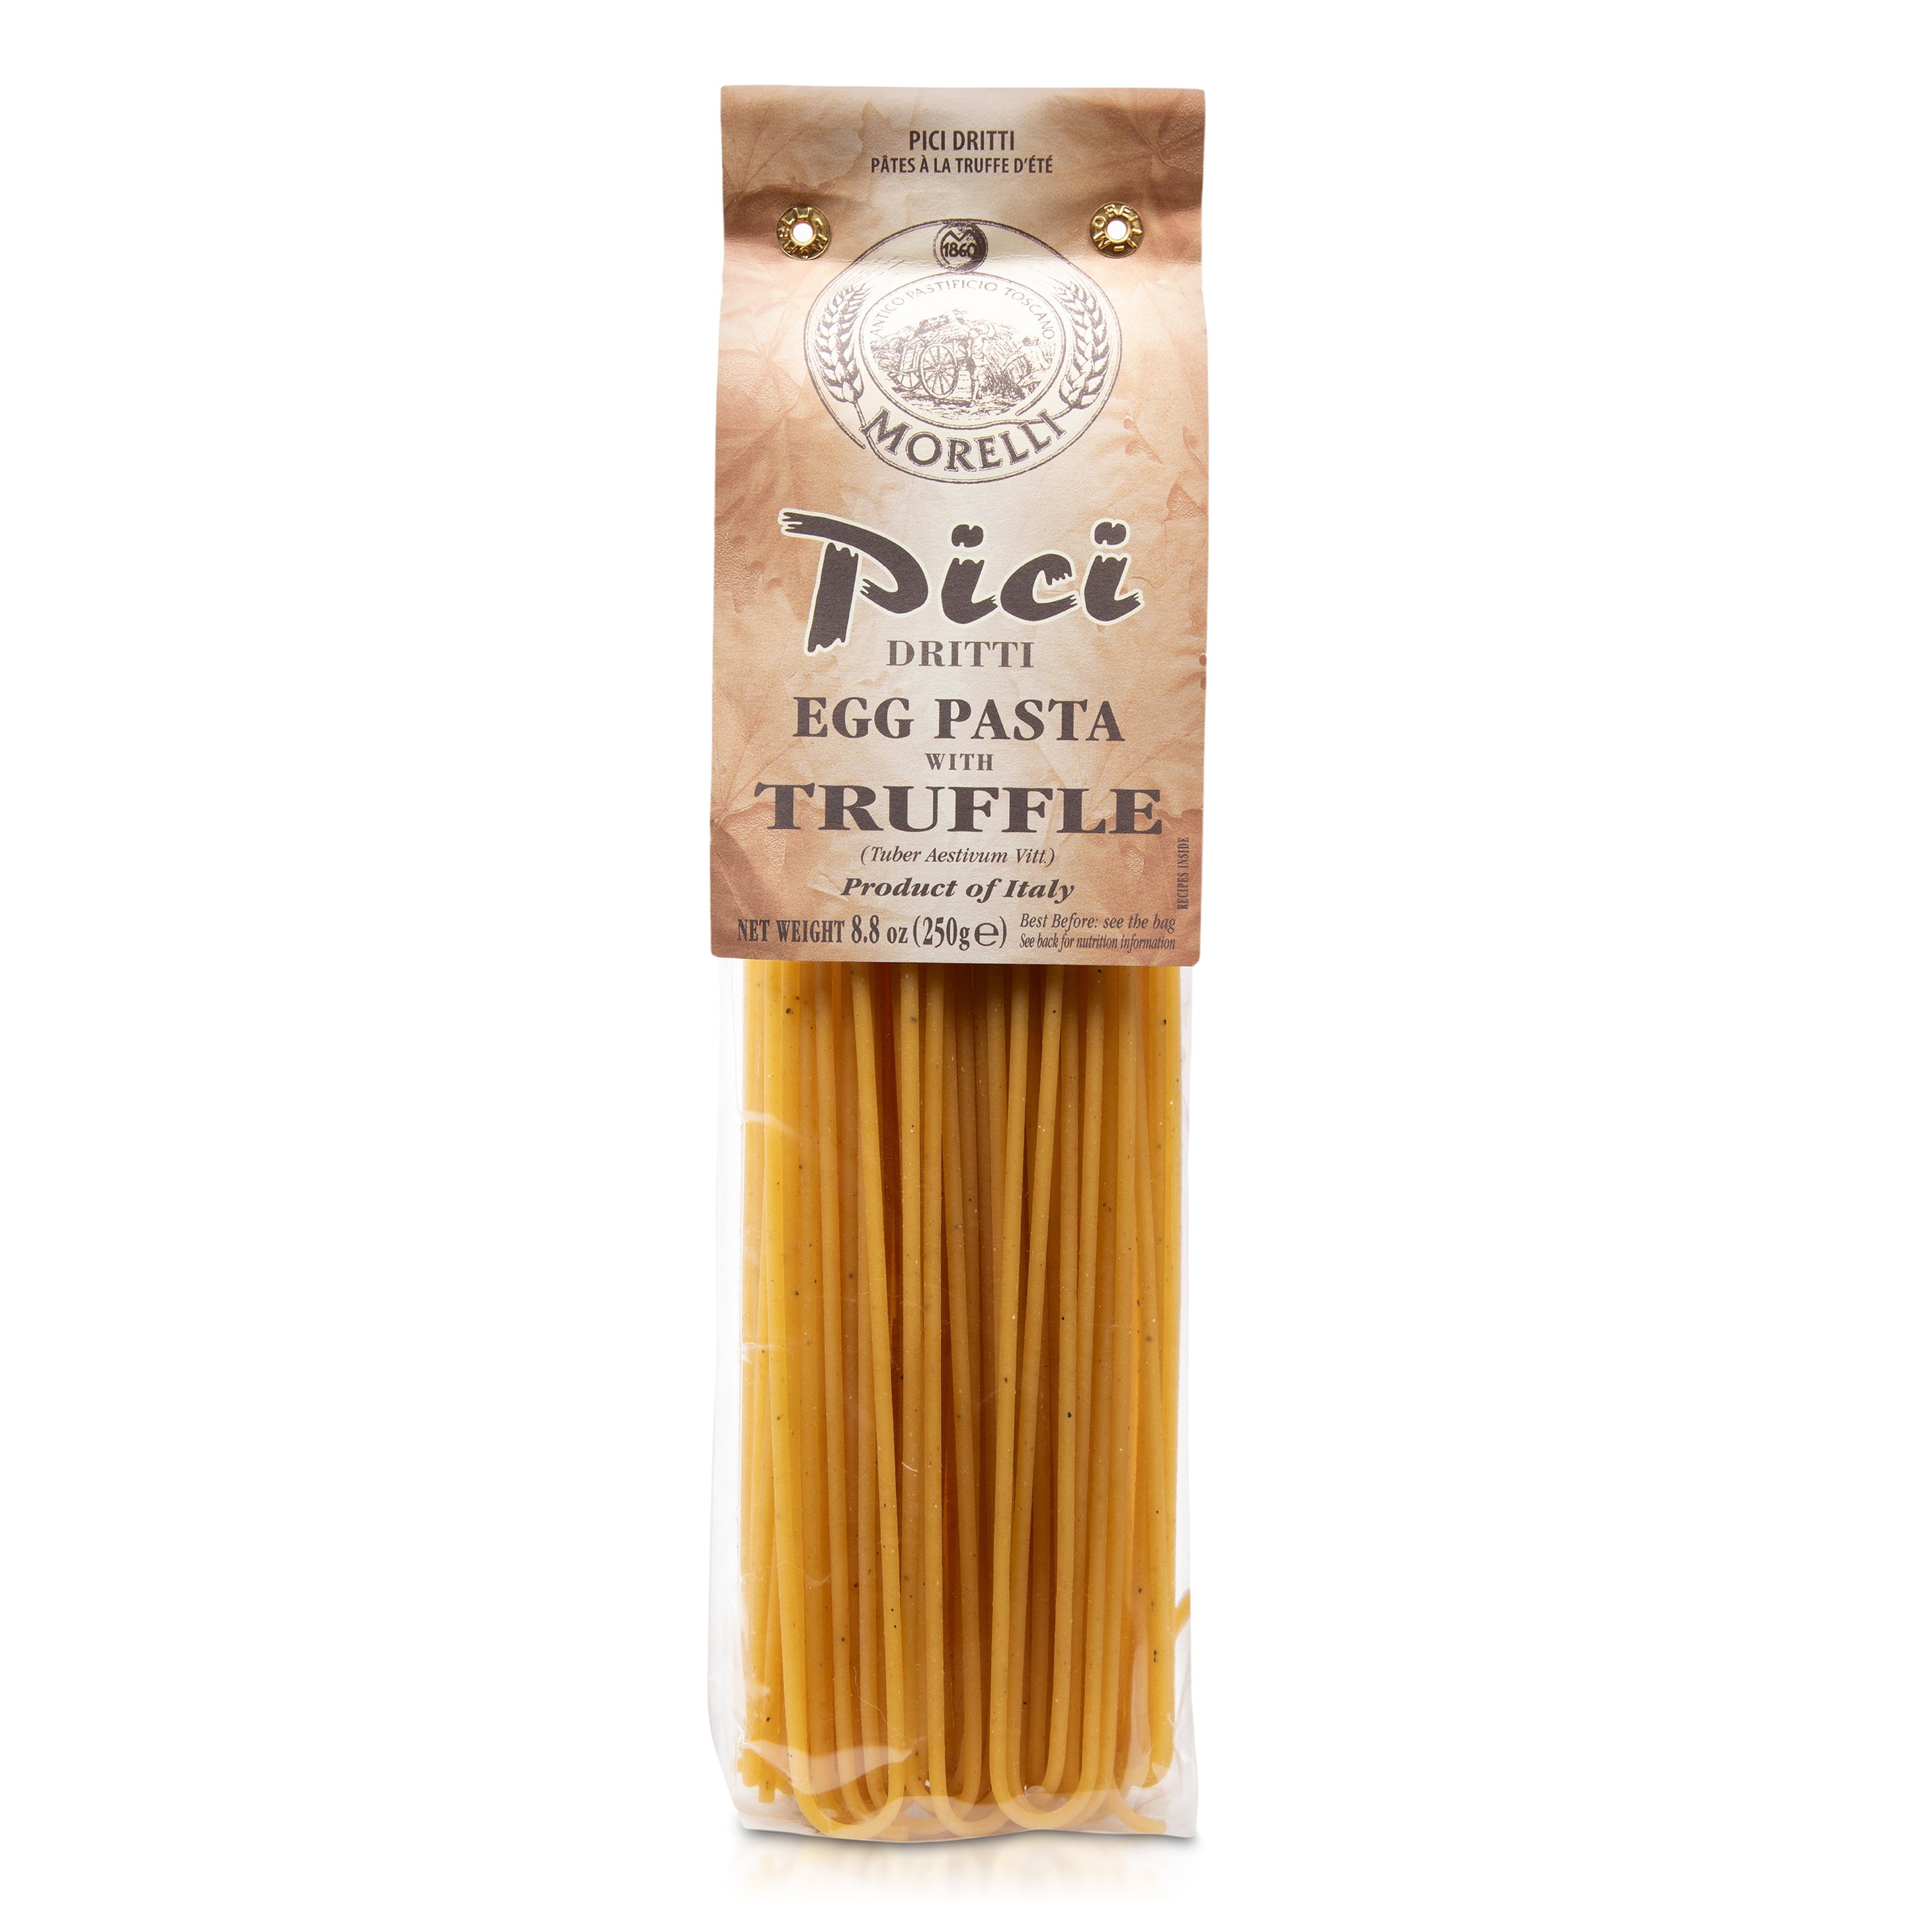 Morelli Pici Pack Premium Italian 250g Italy, 2 of Pasta, Pasta - Imported Pasta 8.8 Wheat Handmade, Italian Noodles Egg / Gourmet With Noodles, Truffle, Pasta Pasta from Pasta oz - - Durum Semolina